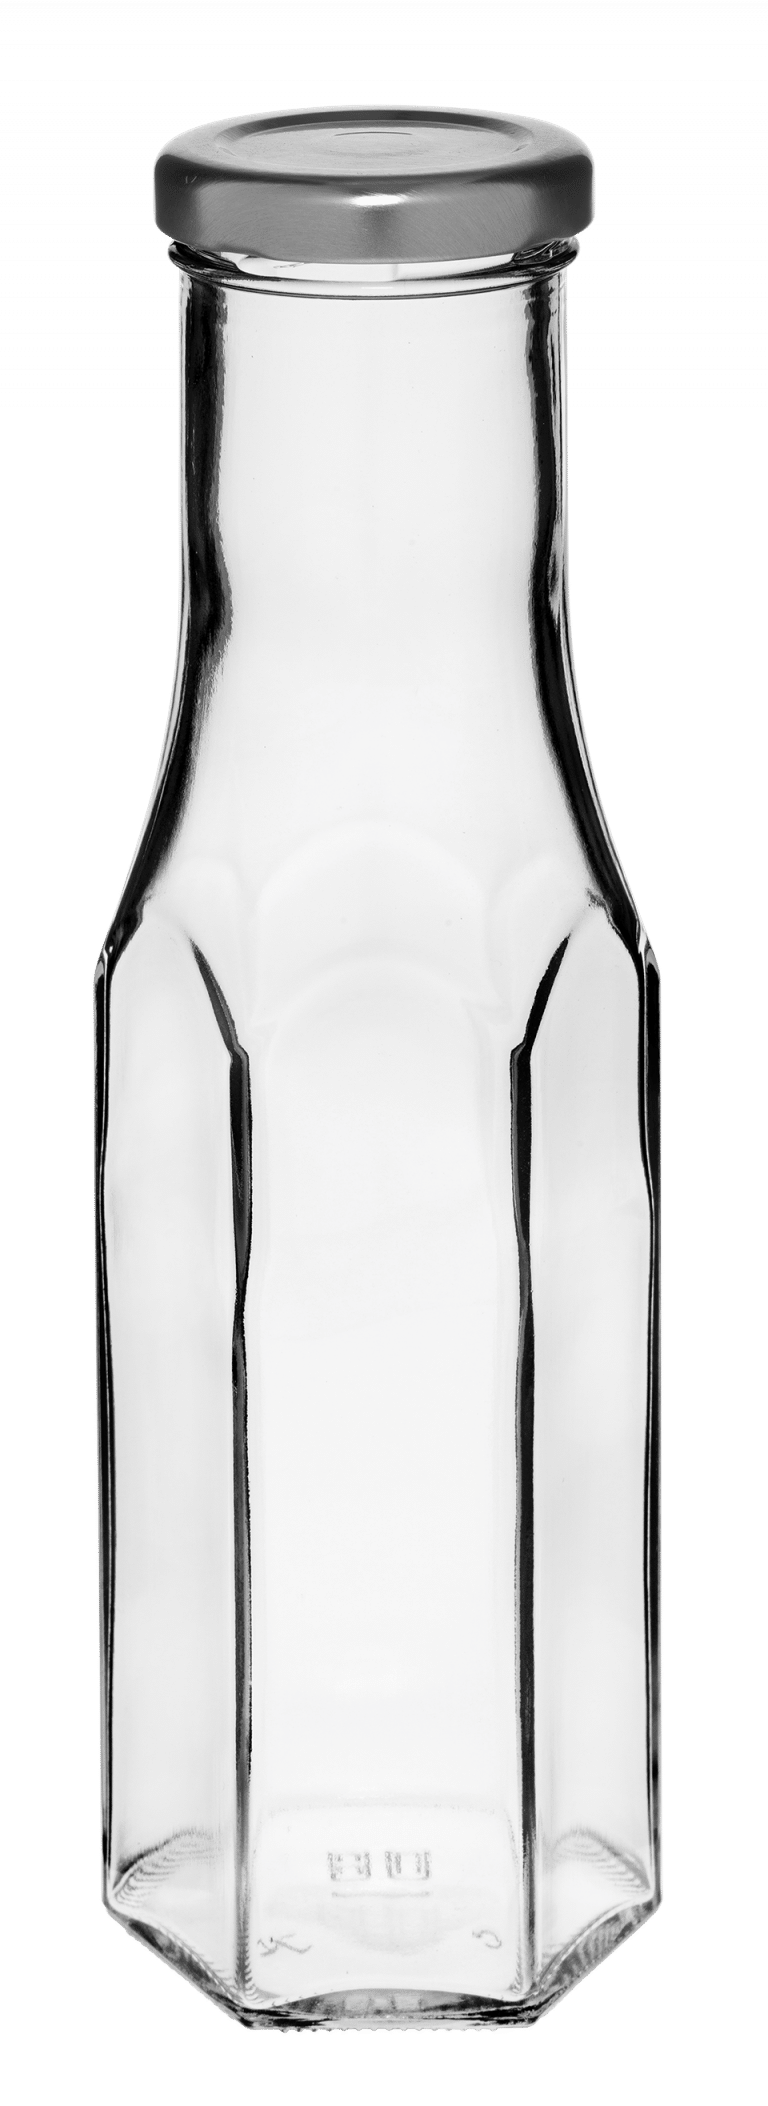 Hexagonal bottle 250ml 43TO glass white flint